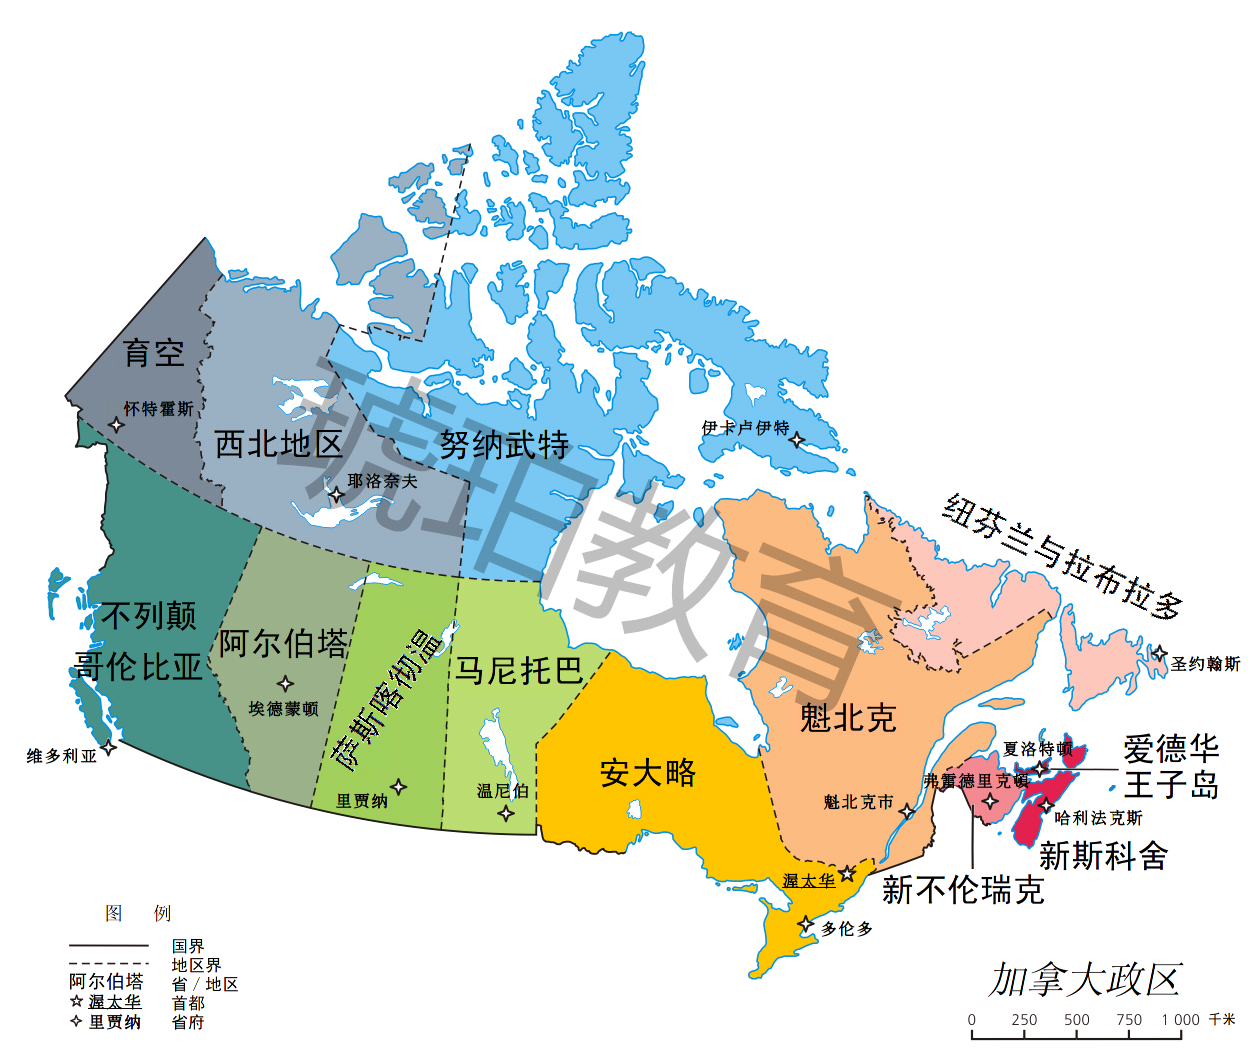 西临太平洋,是加拿大第三大省,该省最大城市是温哥华